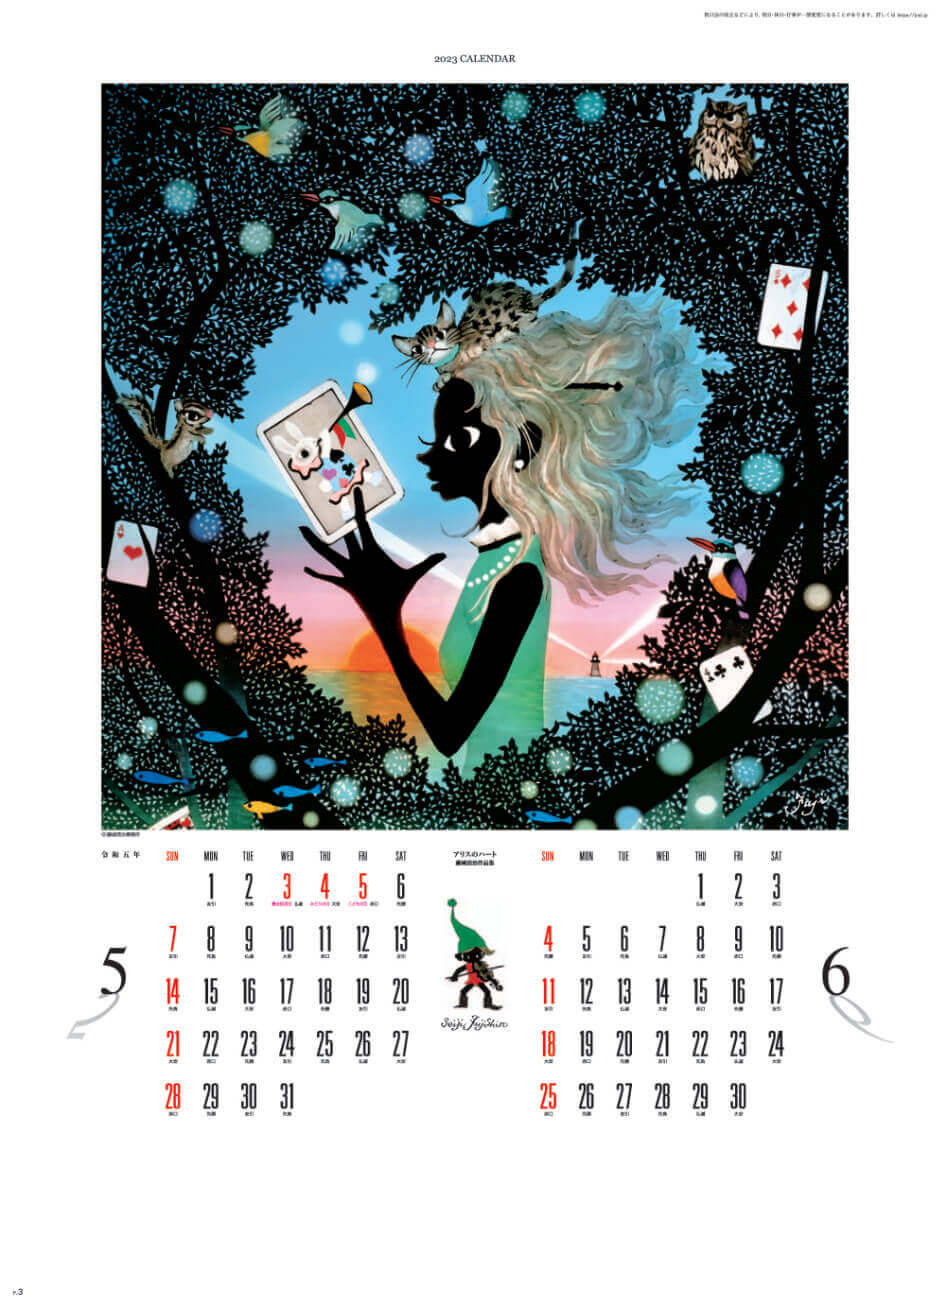 5/6月 アリスのハート 遠い日の風景から(影絵) 藤城清治 2023年カレンダーの画像